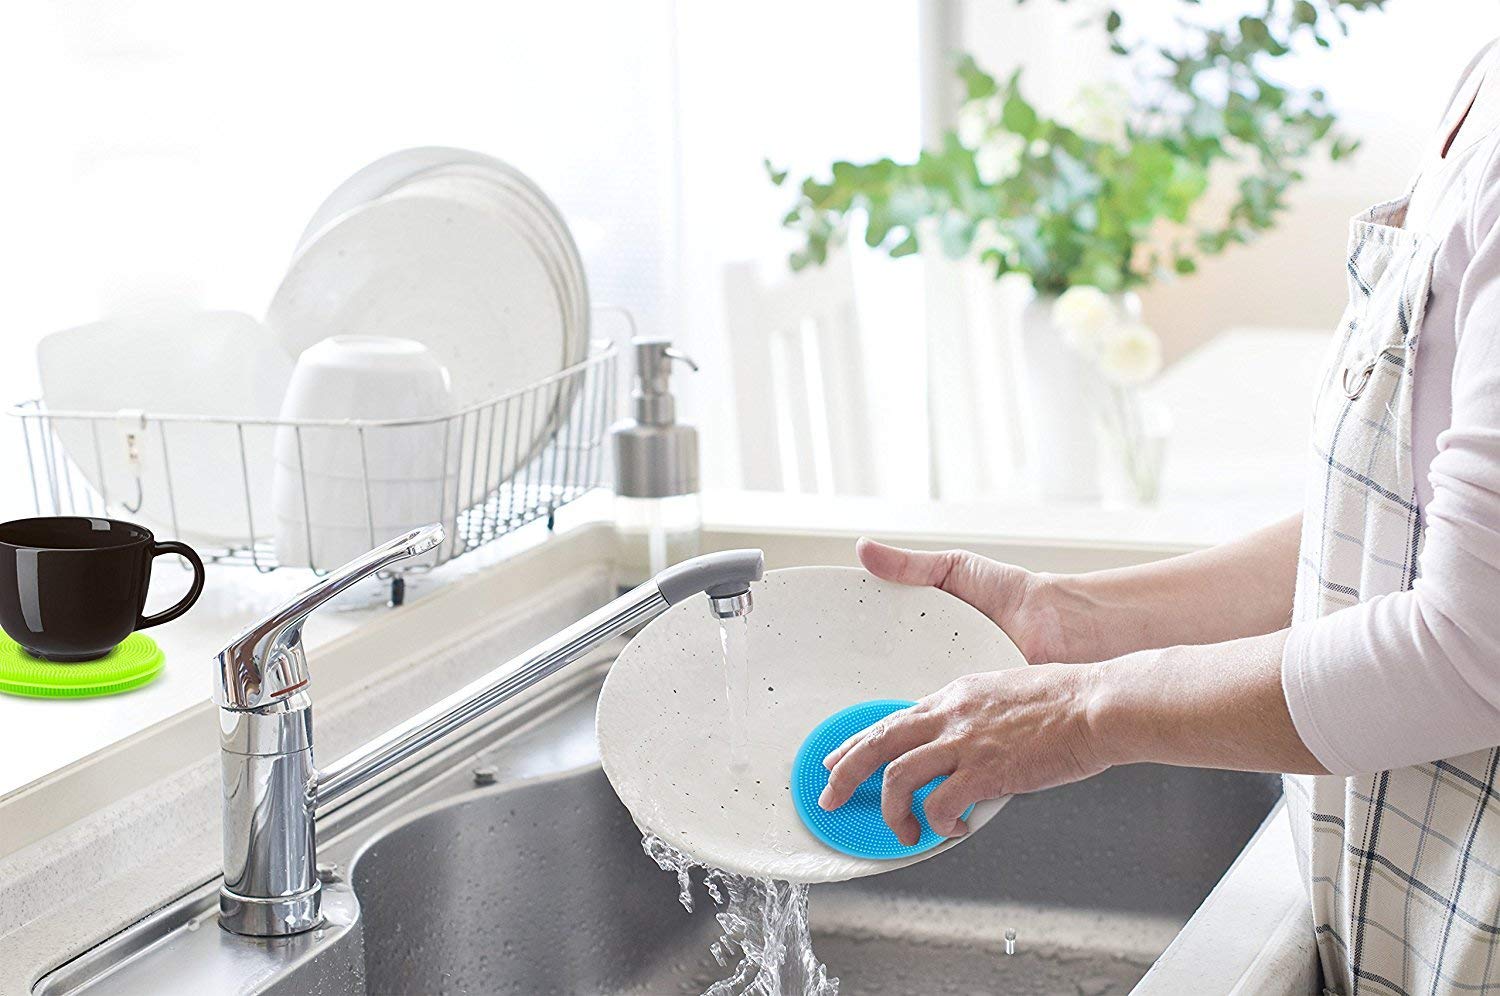 Silicone Sponge Washing Dishes